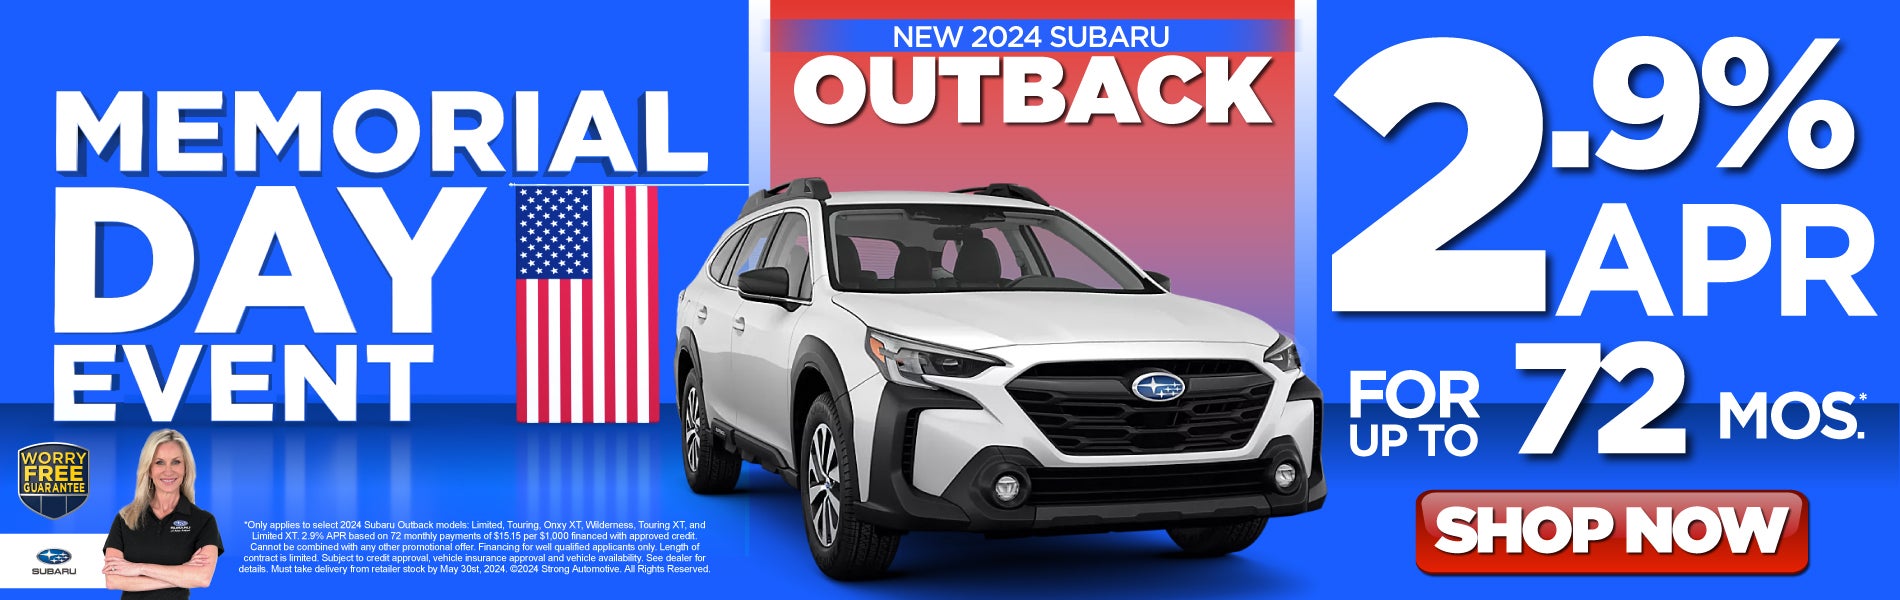 New 2024 Subaru Outback - 2.9% apr* - Shop Now